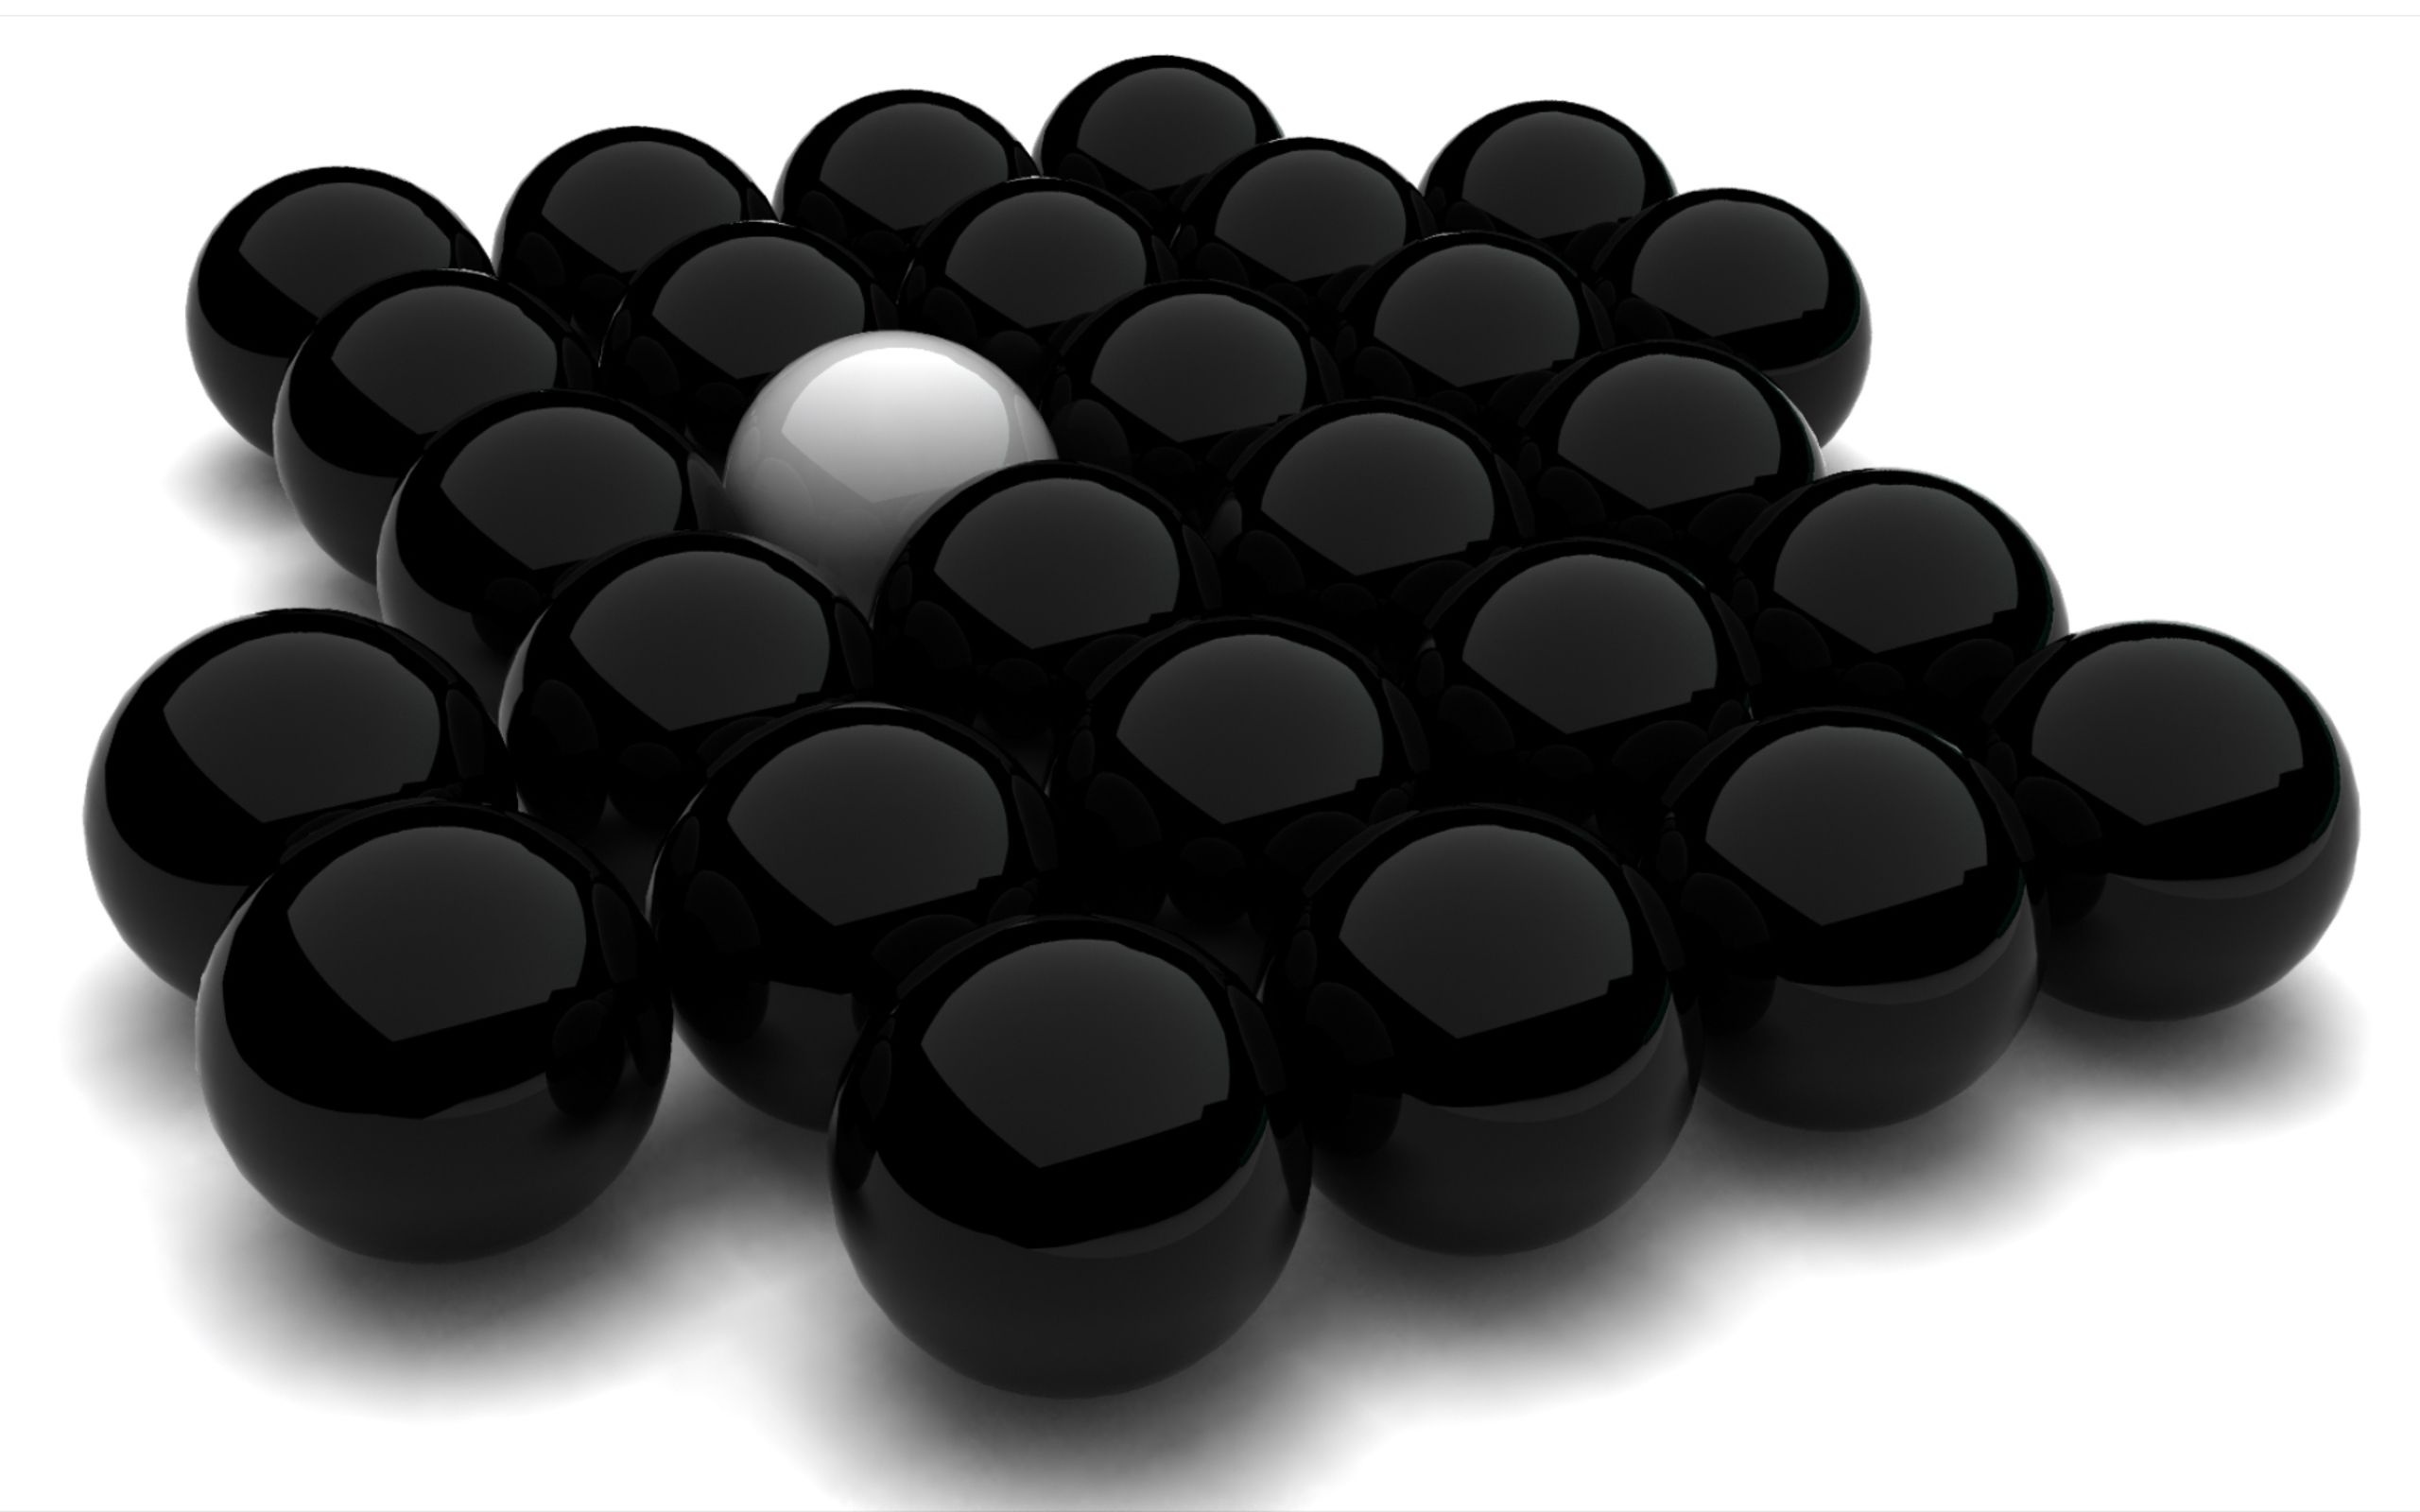 Spheres Black